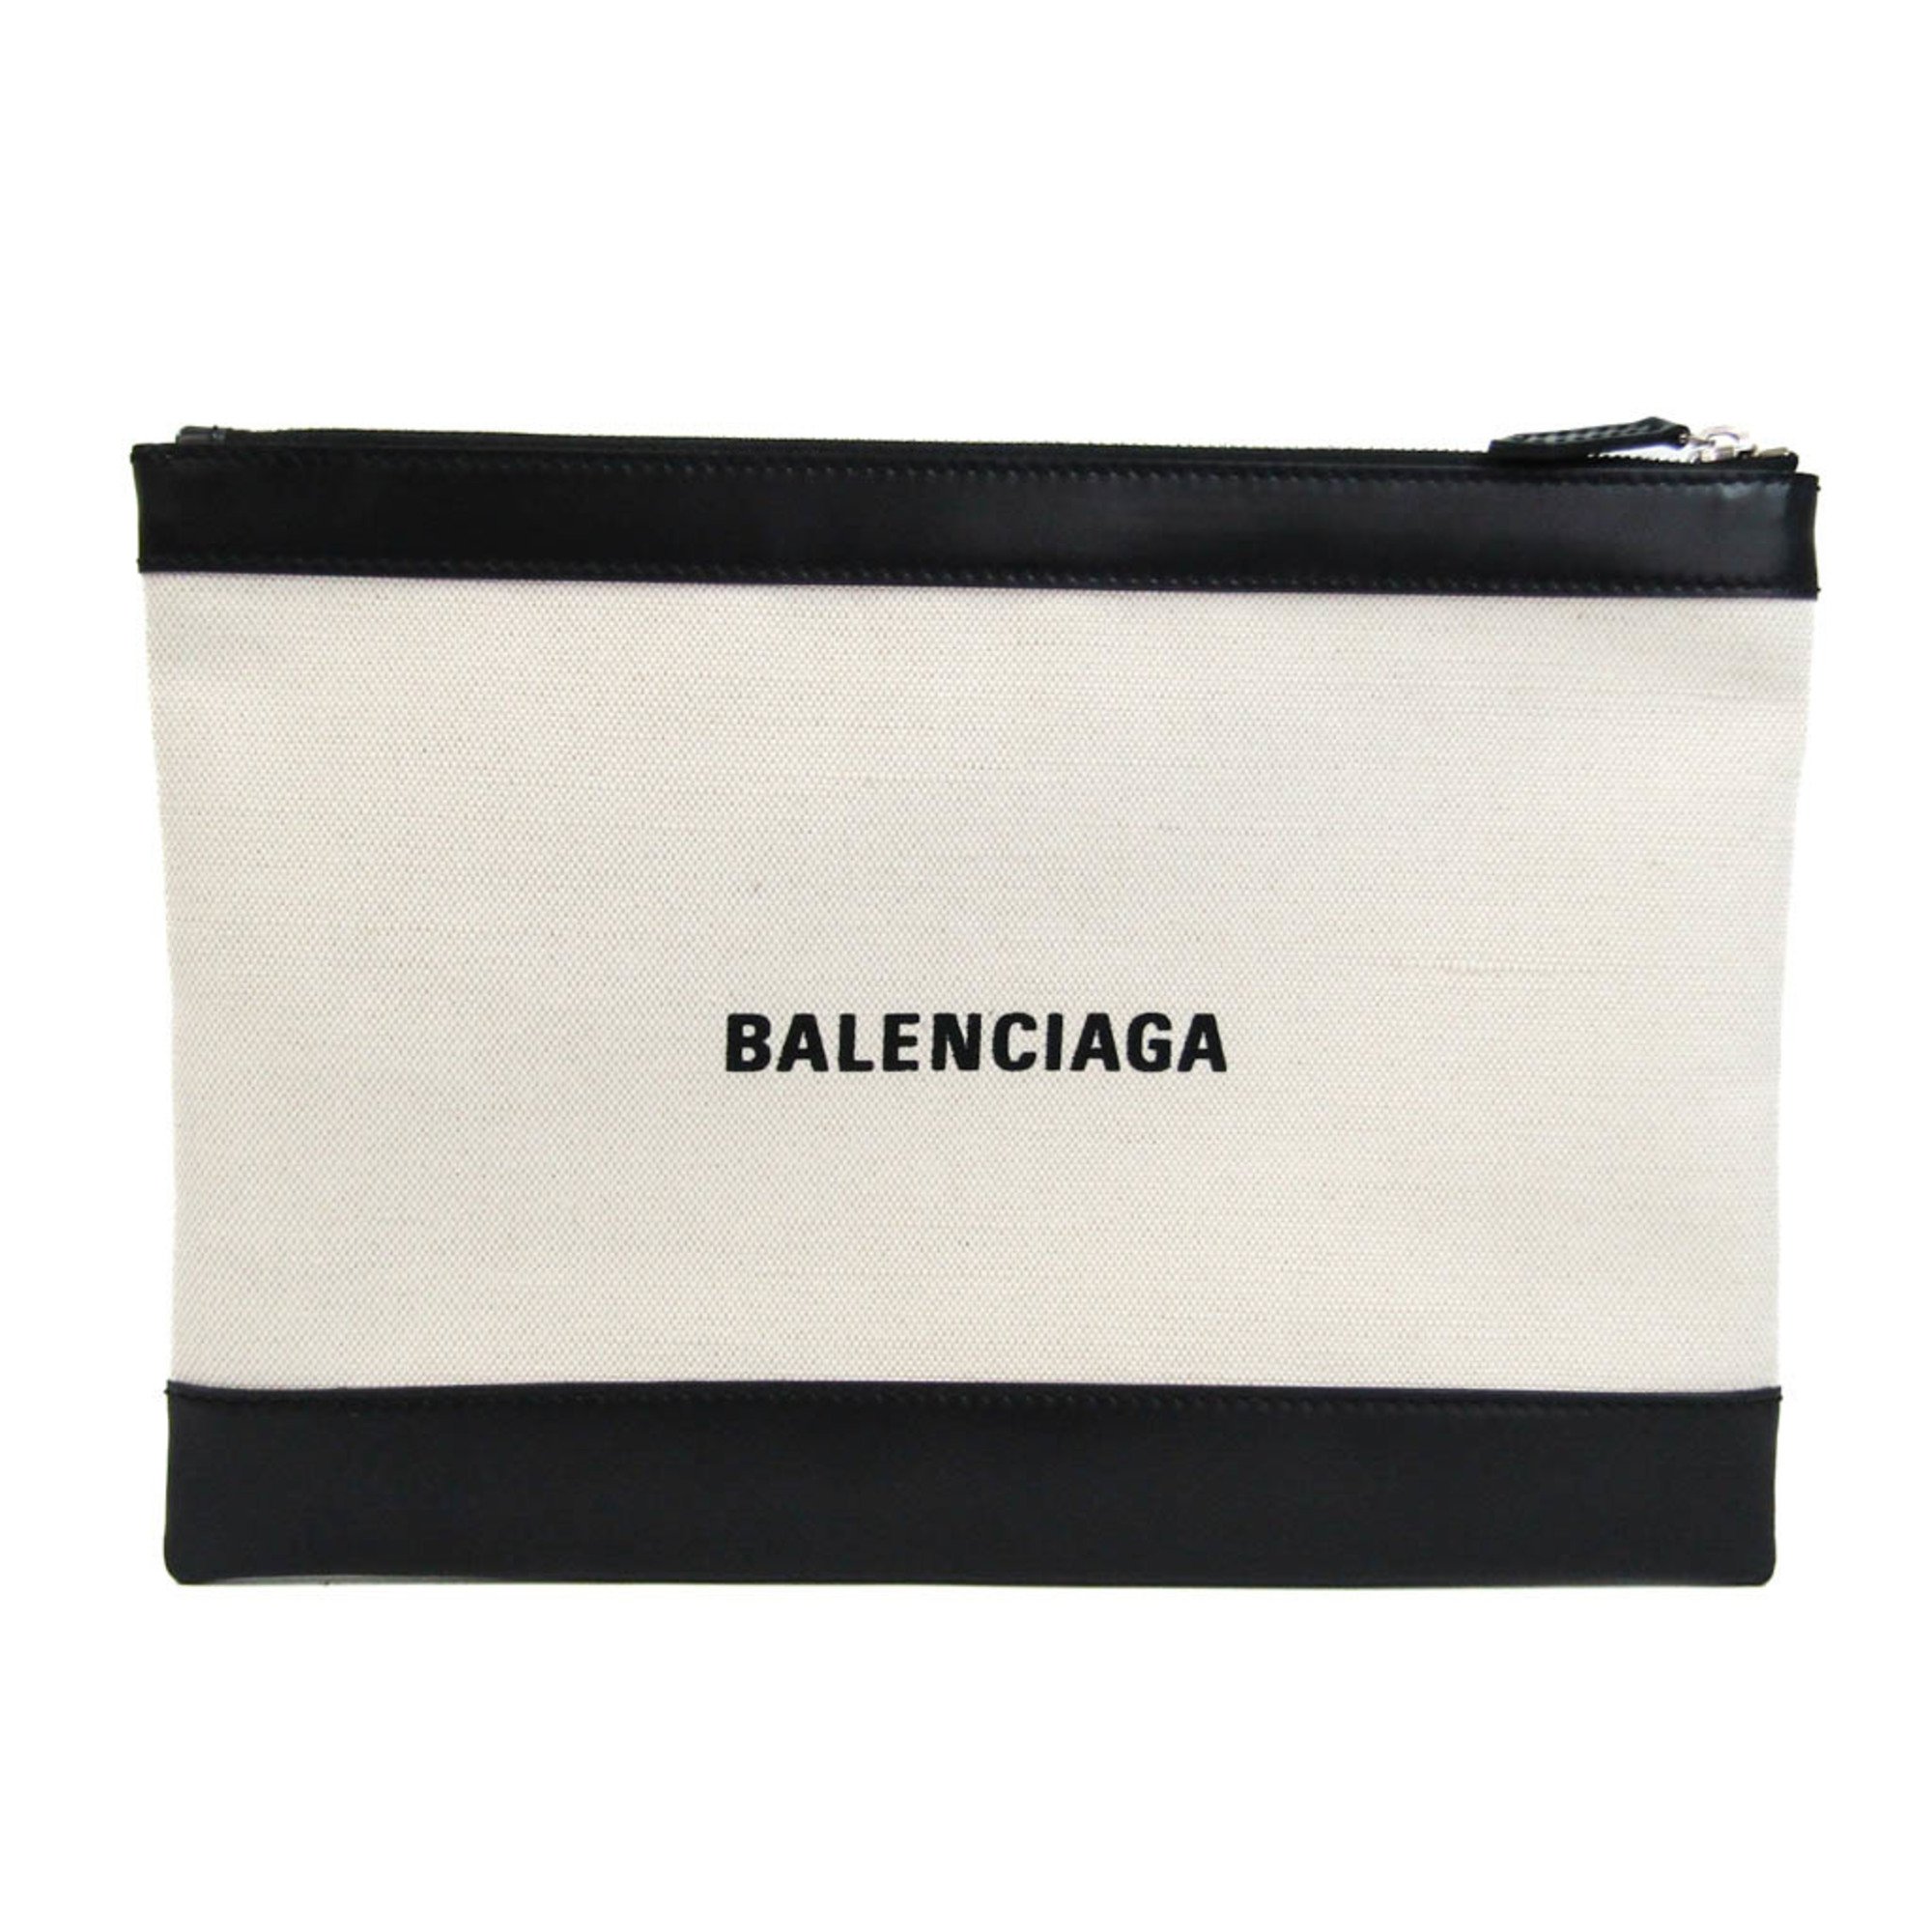 バレンシアガ(Balenciaga) ネイビークリップM 373834 レディース,メンズ キャンバス,レザー クラッチバッグ ブラック,オフホワイト  | eLADY Globazone